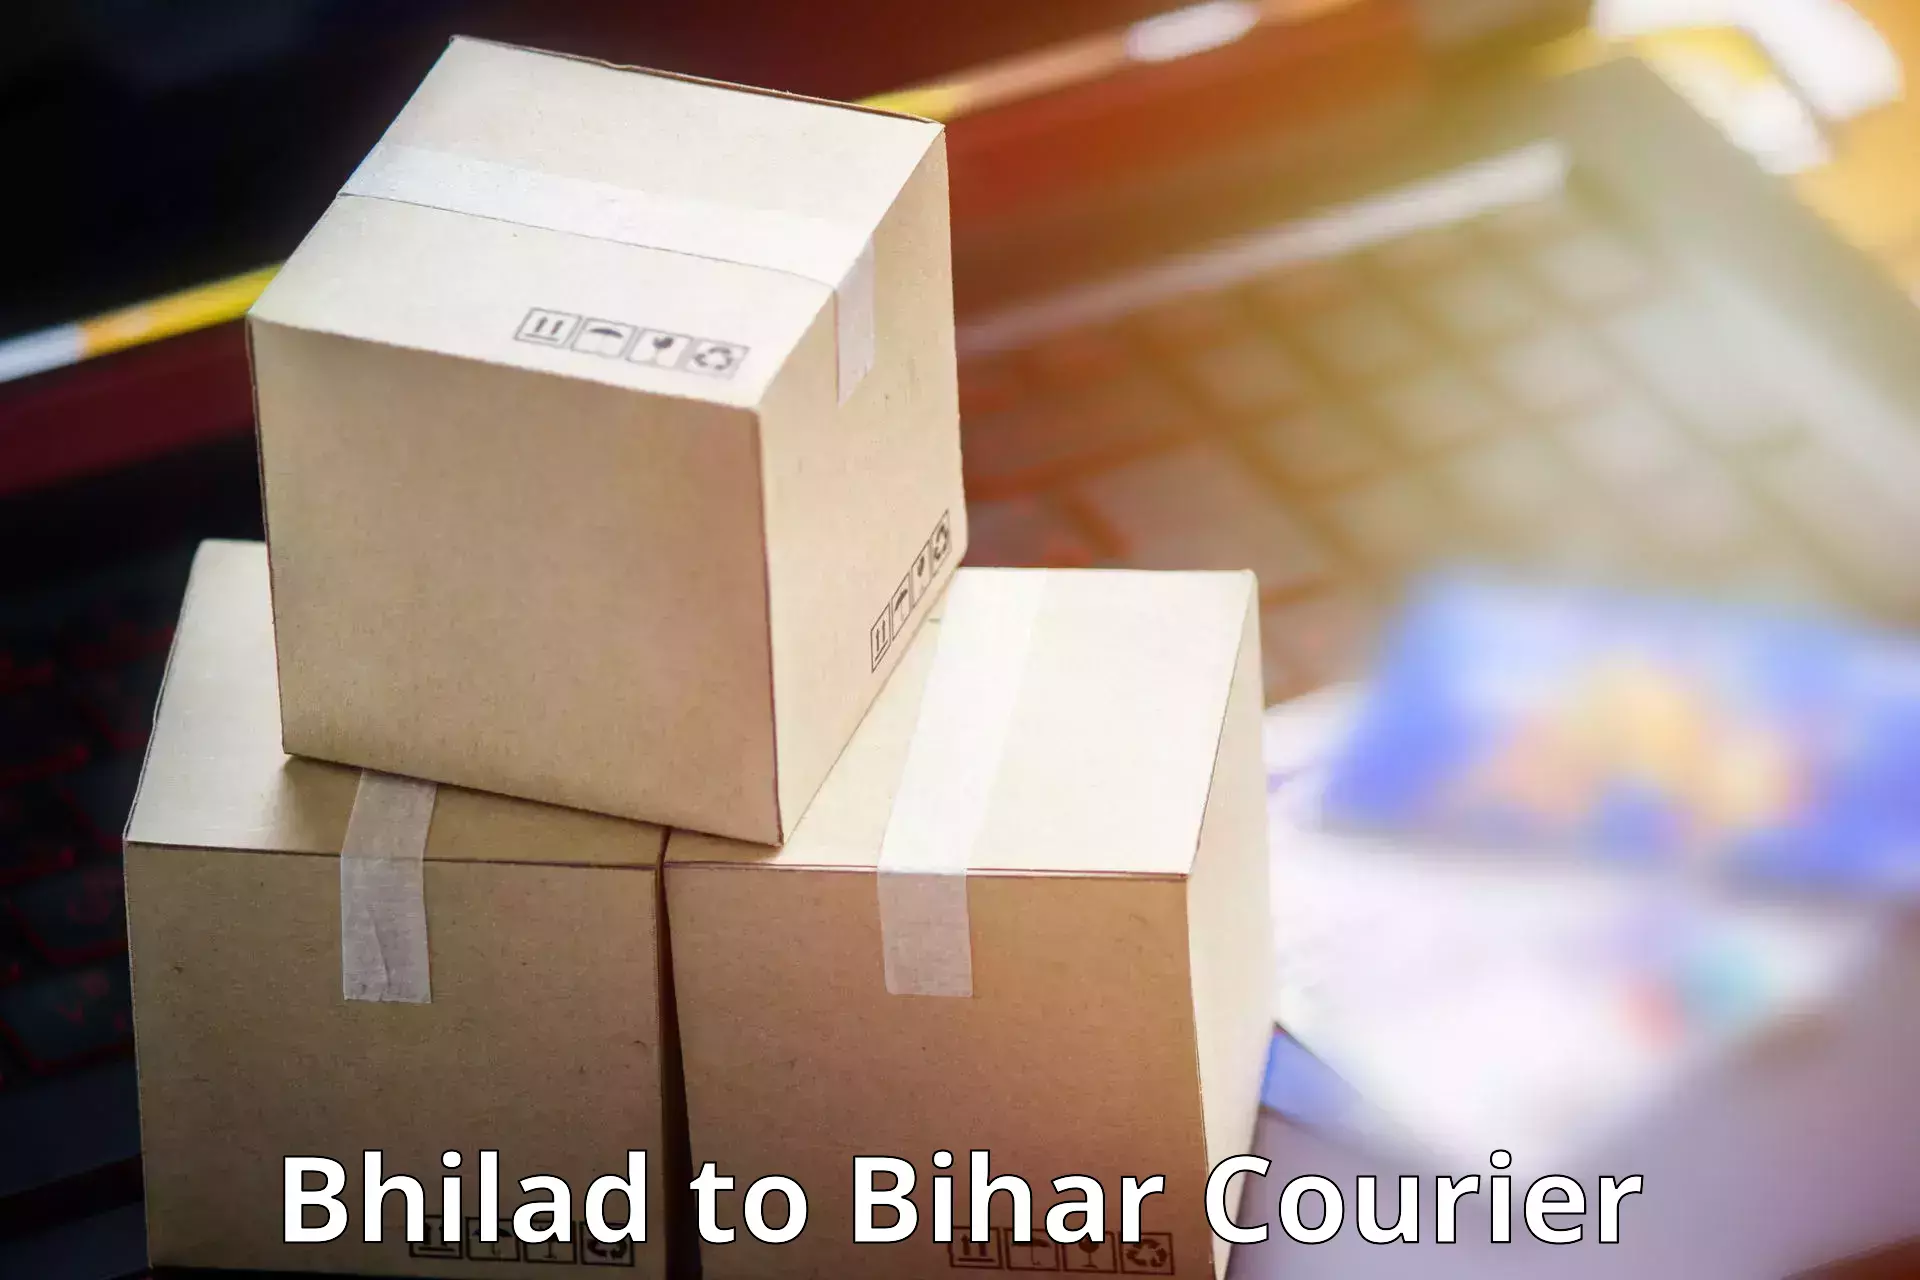 Multi-service courier options Bhilad to Brahmapur